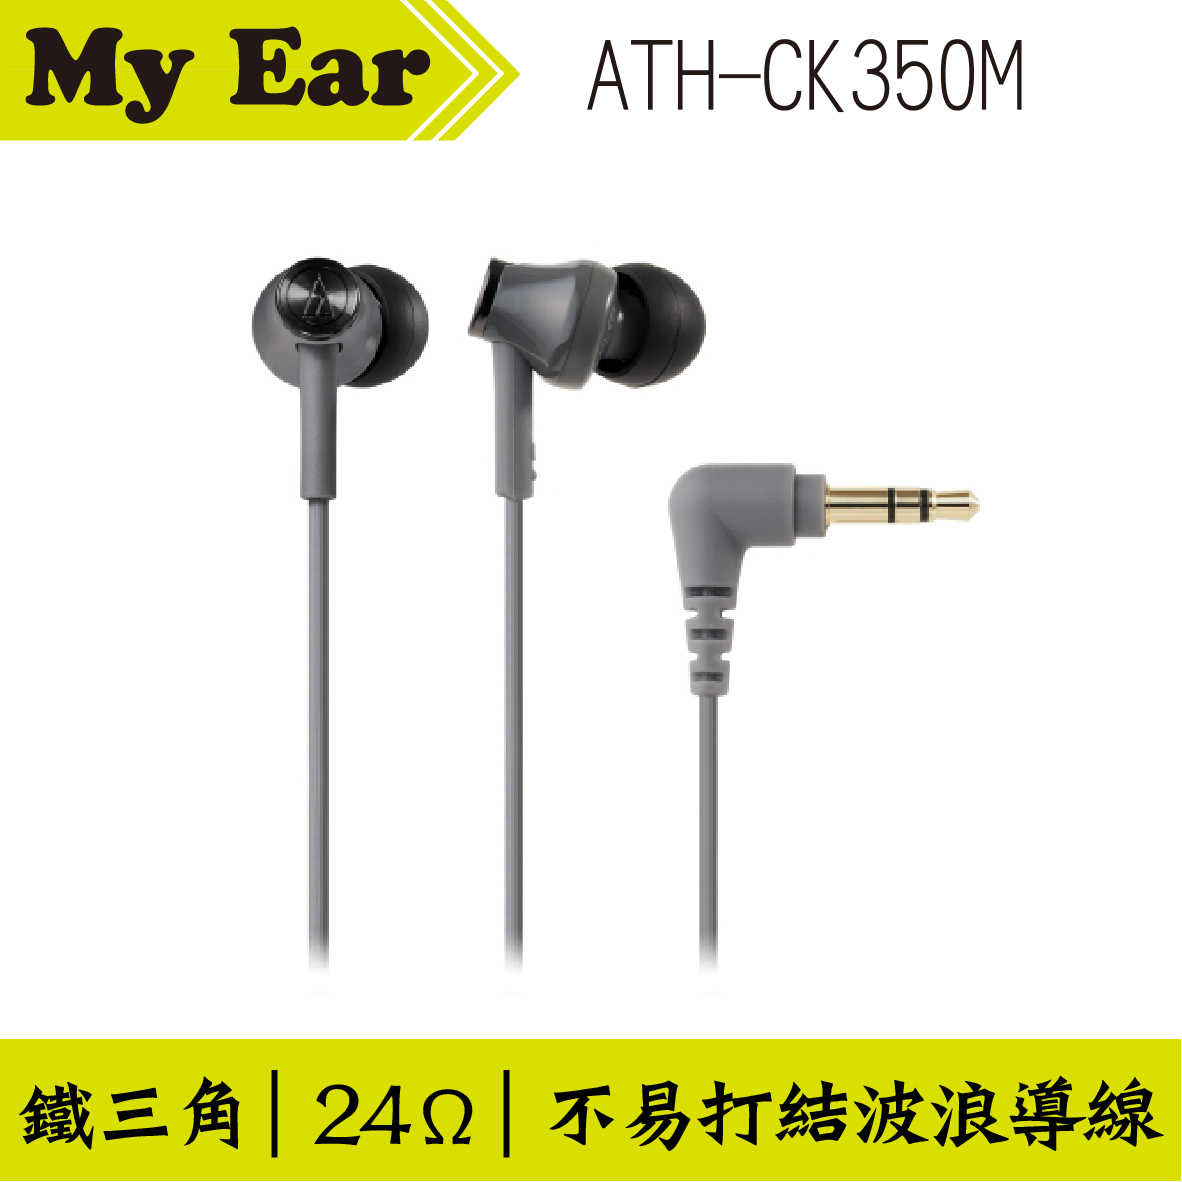 鐵三角 ATH-CK350M 耳道式耳機 湖水藍色｜My Ear 耳機專門店